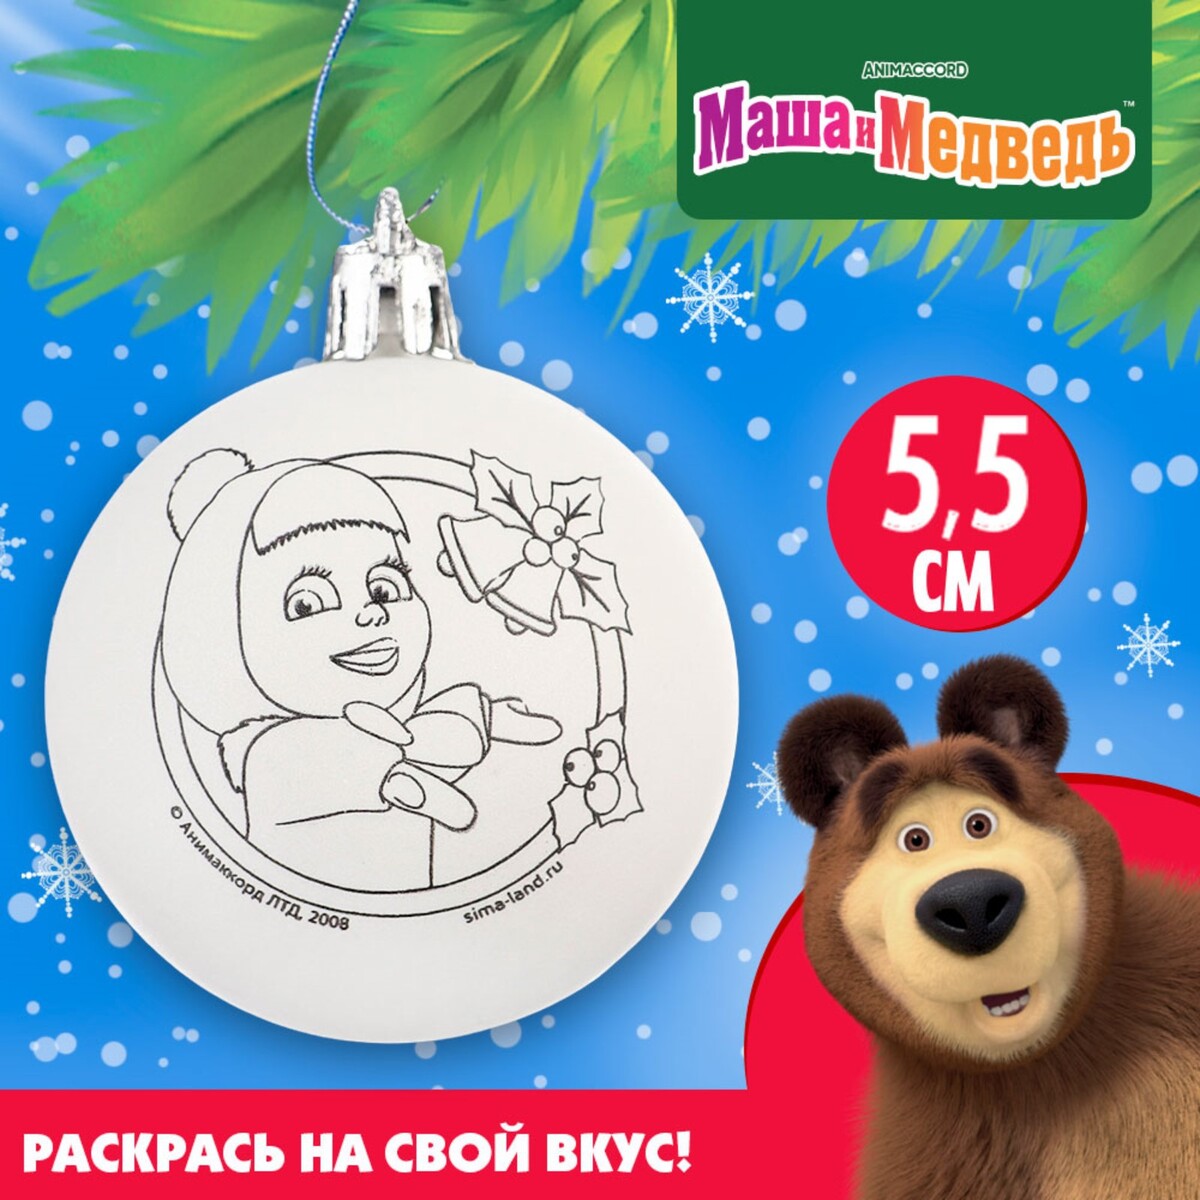 Новогоднее елочное украшение под раскраску, размер шара 5,5 см, маша и медведь Маша и медведь